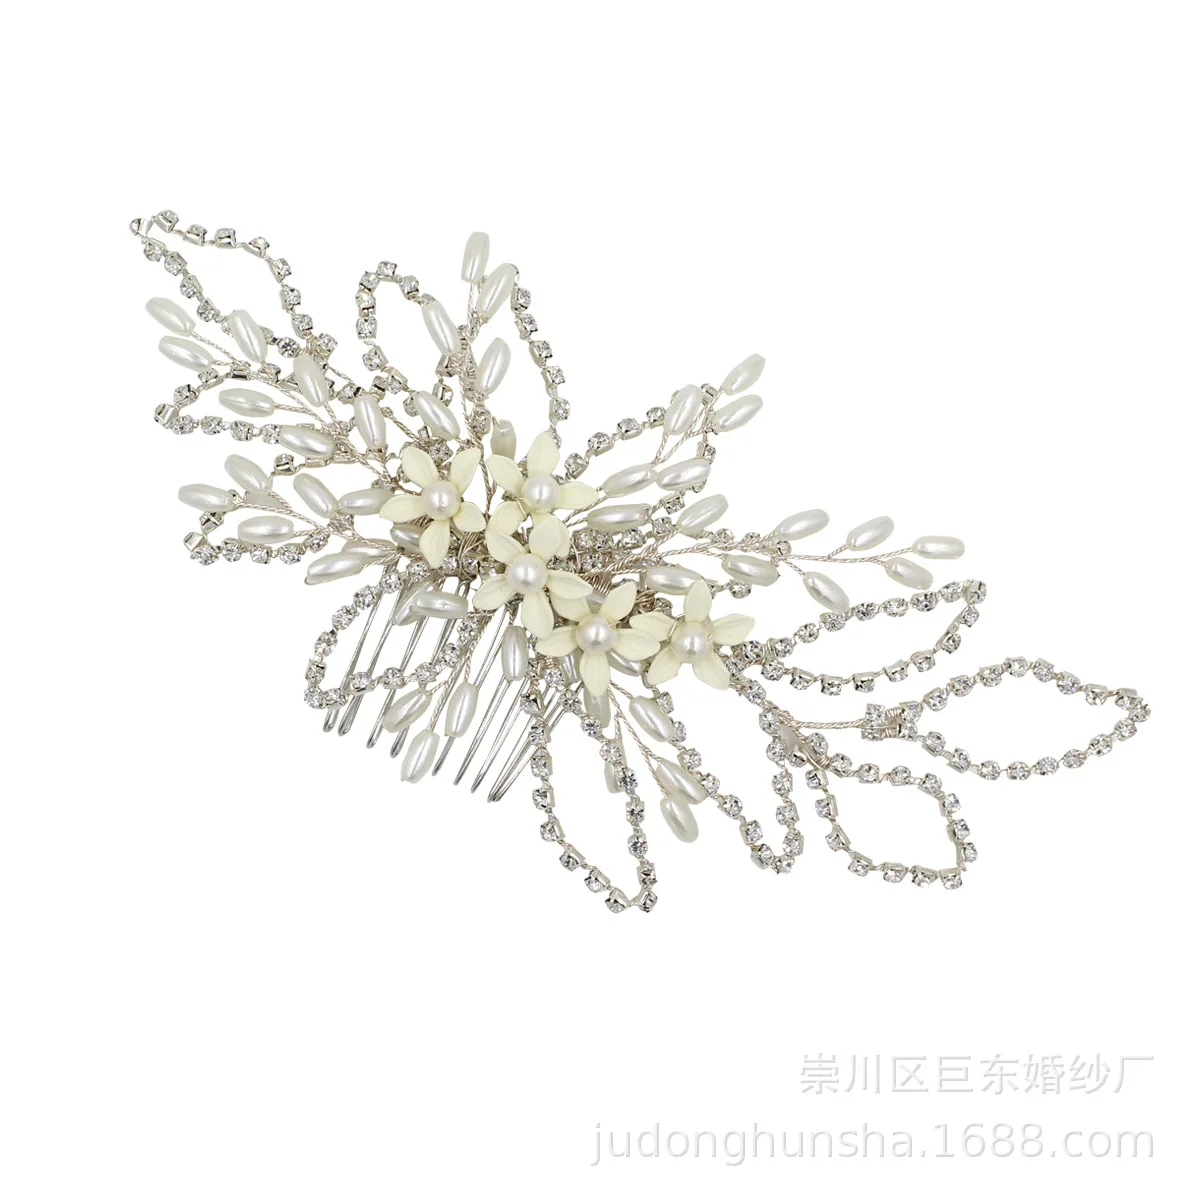 

Le Liin Bride Silver Pearl Hair Comb White Flower Chain Barrette Wedding Hair Accessories Bridal Headpiece